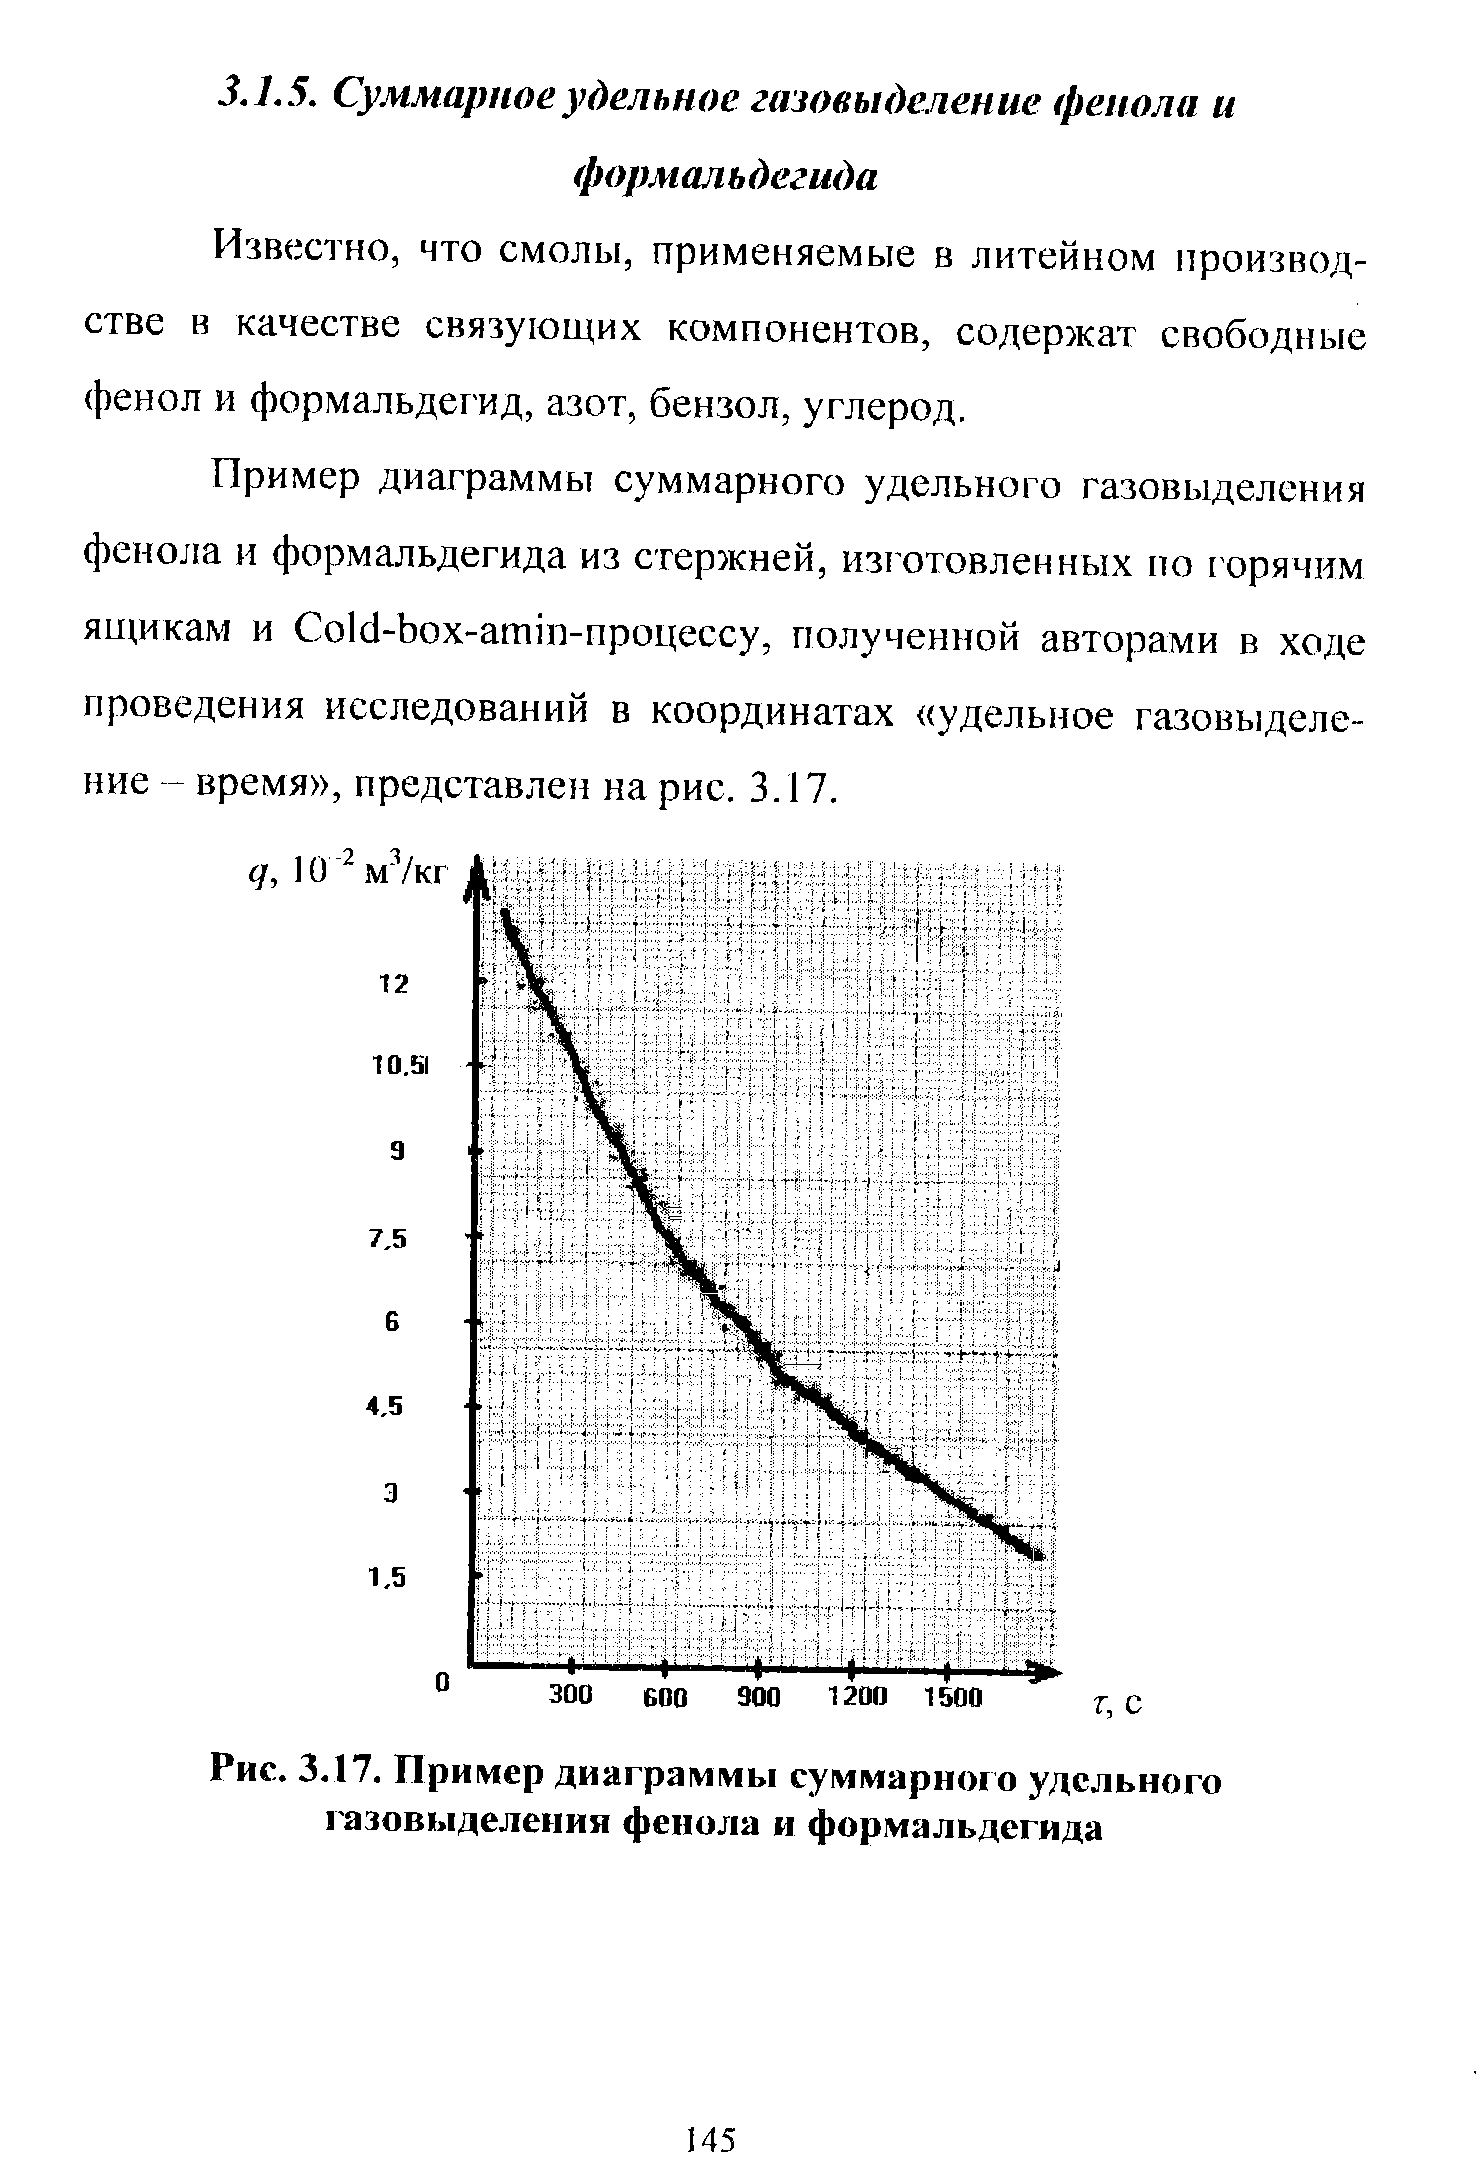 Рис. 3.17. Пример диаграммы суммарного удельного газовыделения фенола и формальдегида
